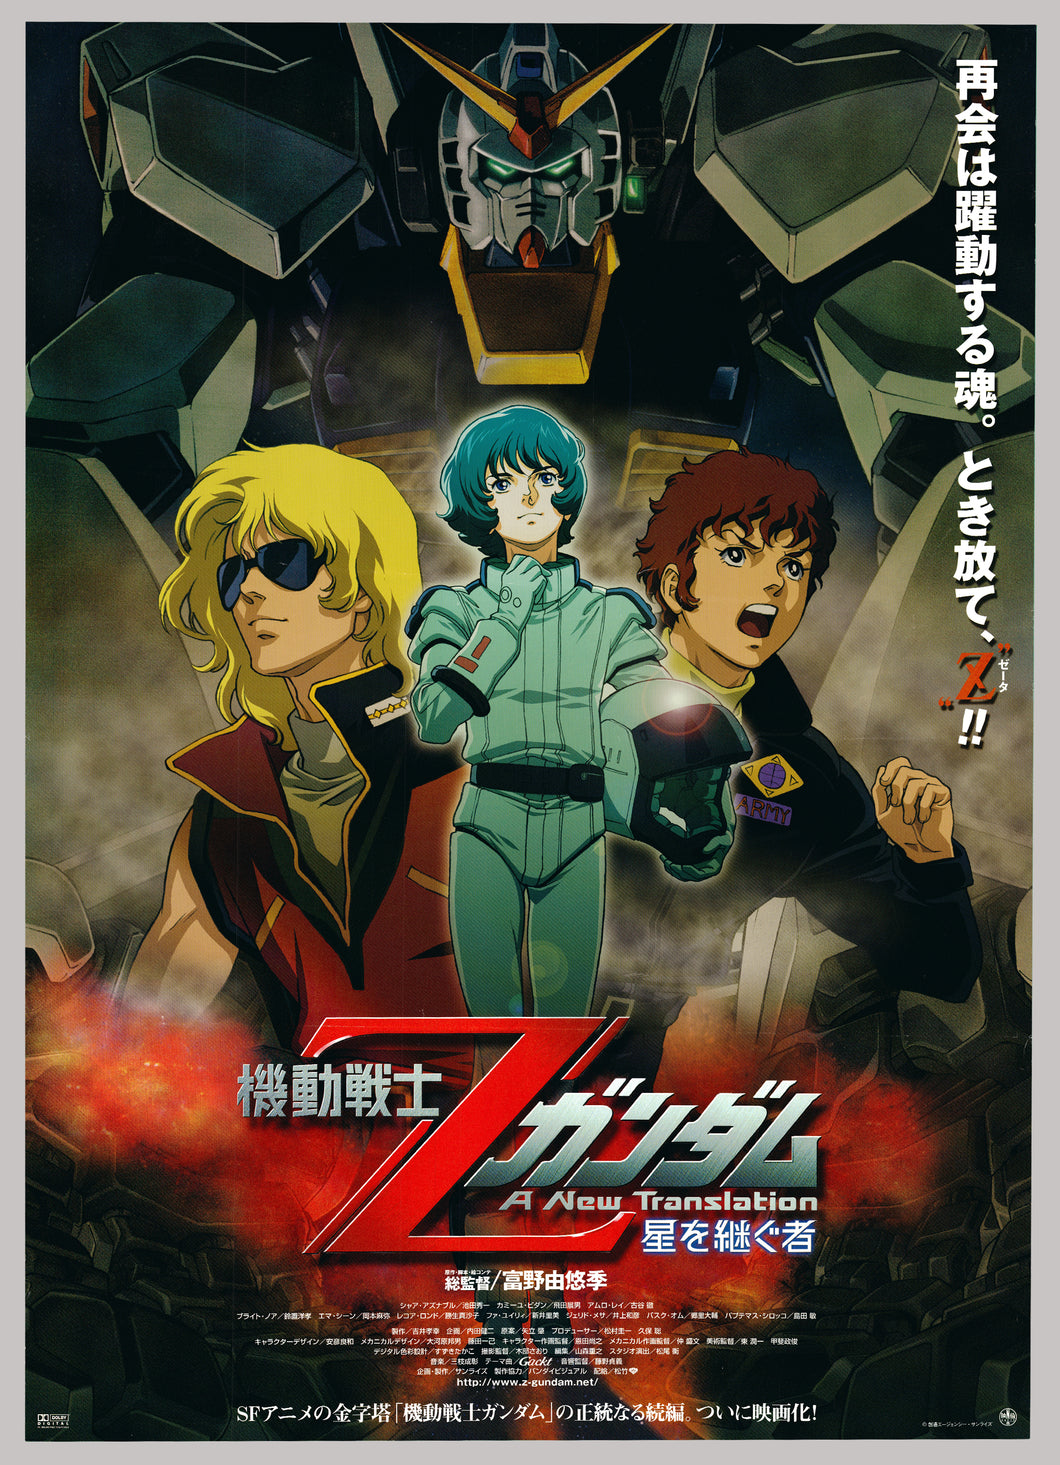 Original Mobile Suit Zeta Gundam Anime Poster Cel Ga Com